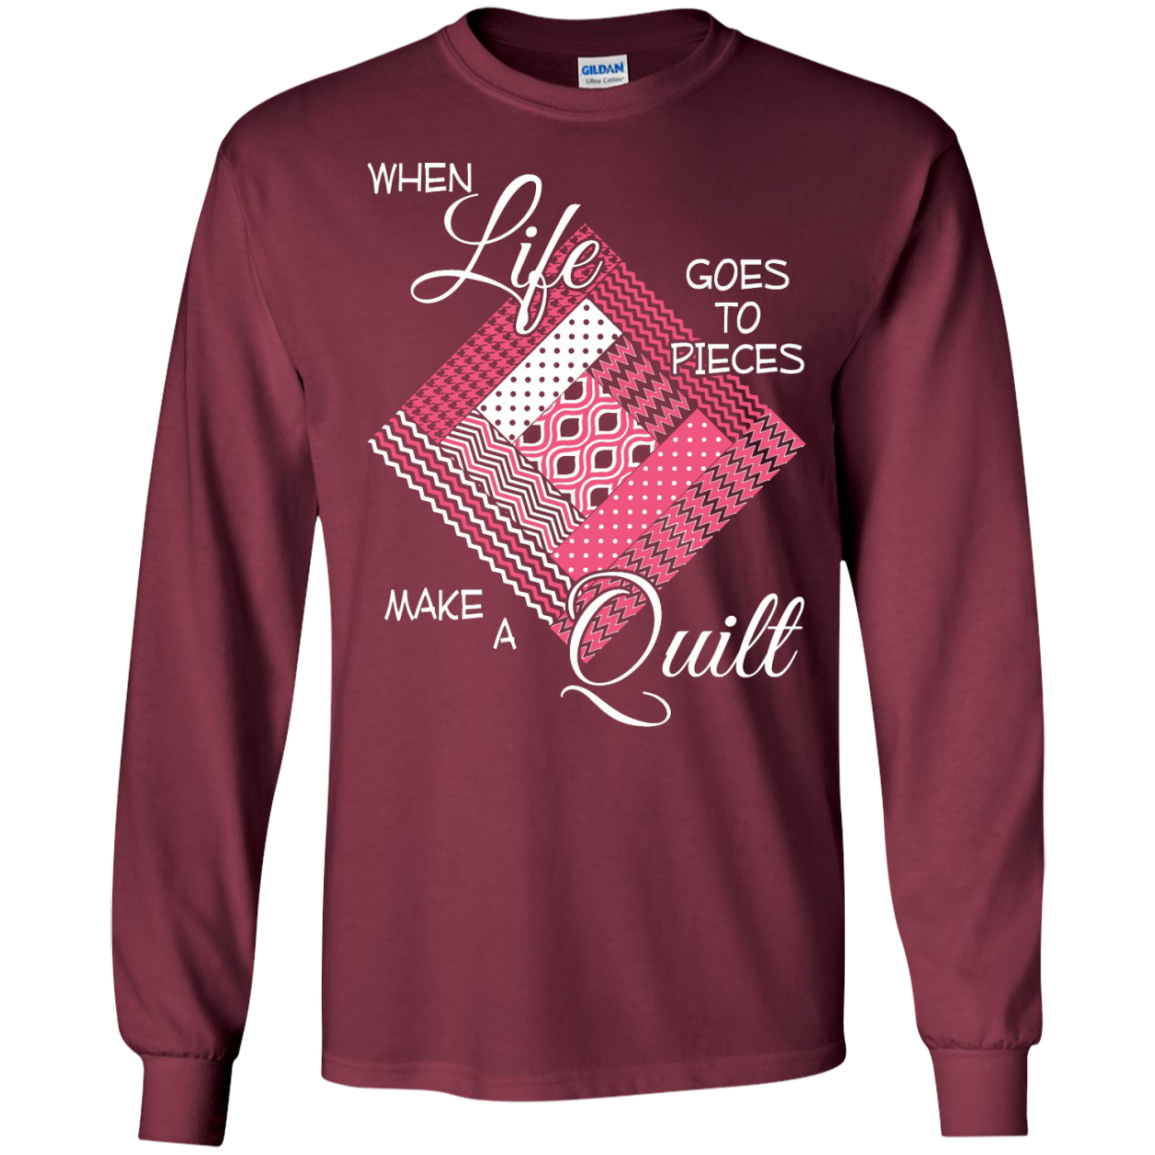 Make a Quilt (pink) Long Sleeve Ultra Cotton T-Shirt - Crafter4Life - 4